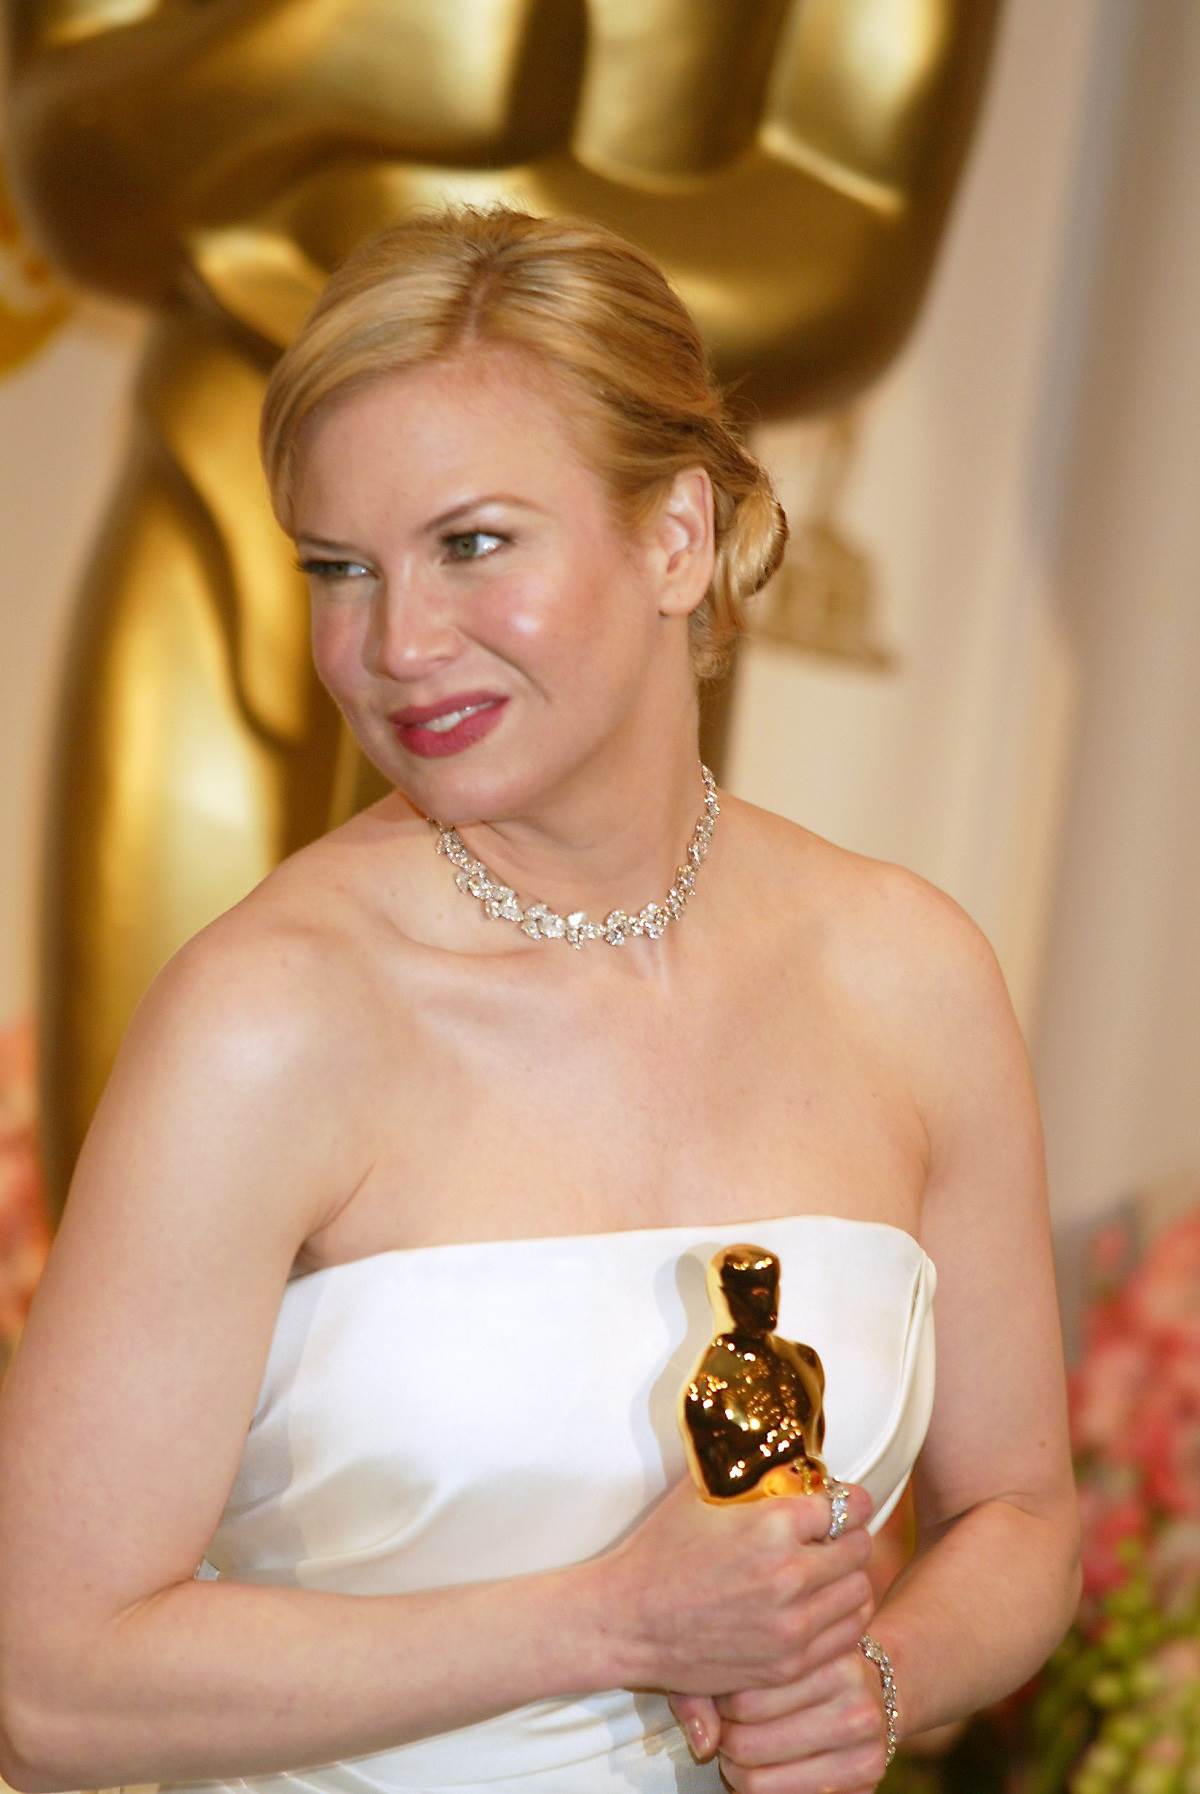  Rene je dobitnica nekoliko nagrada među kojima Oskar za sporednu ulogu, Zlatni globus i BAFTA 